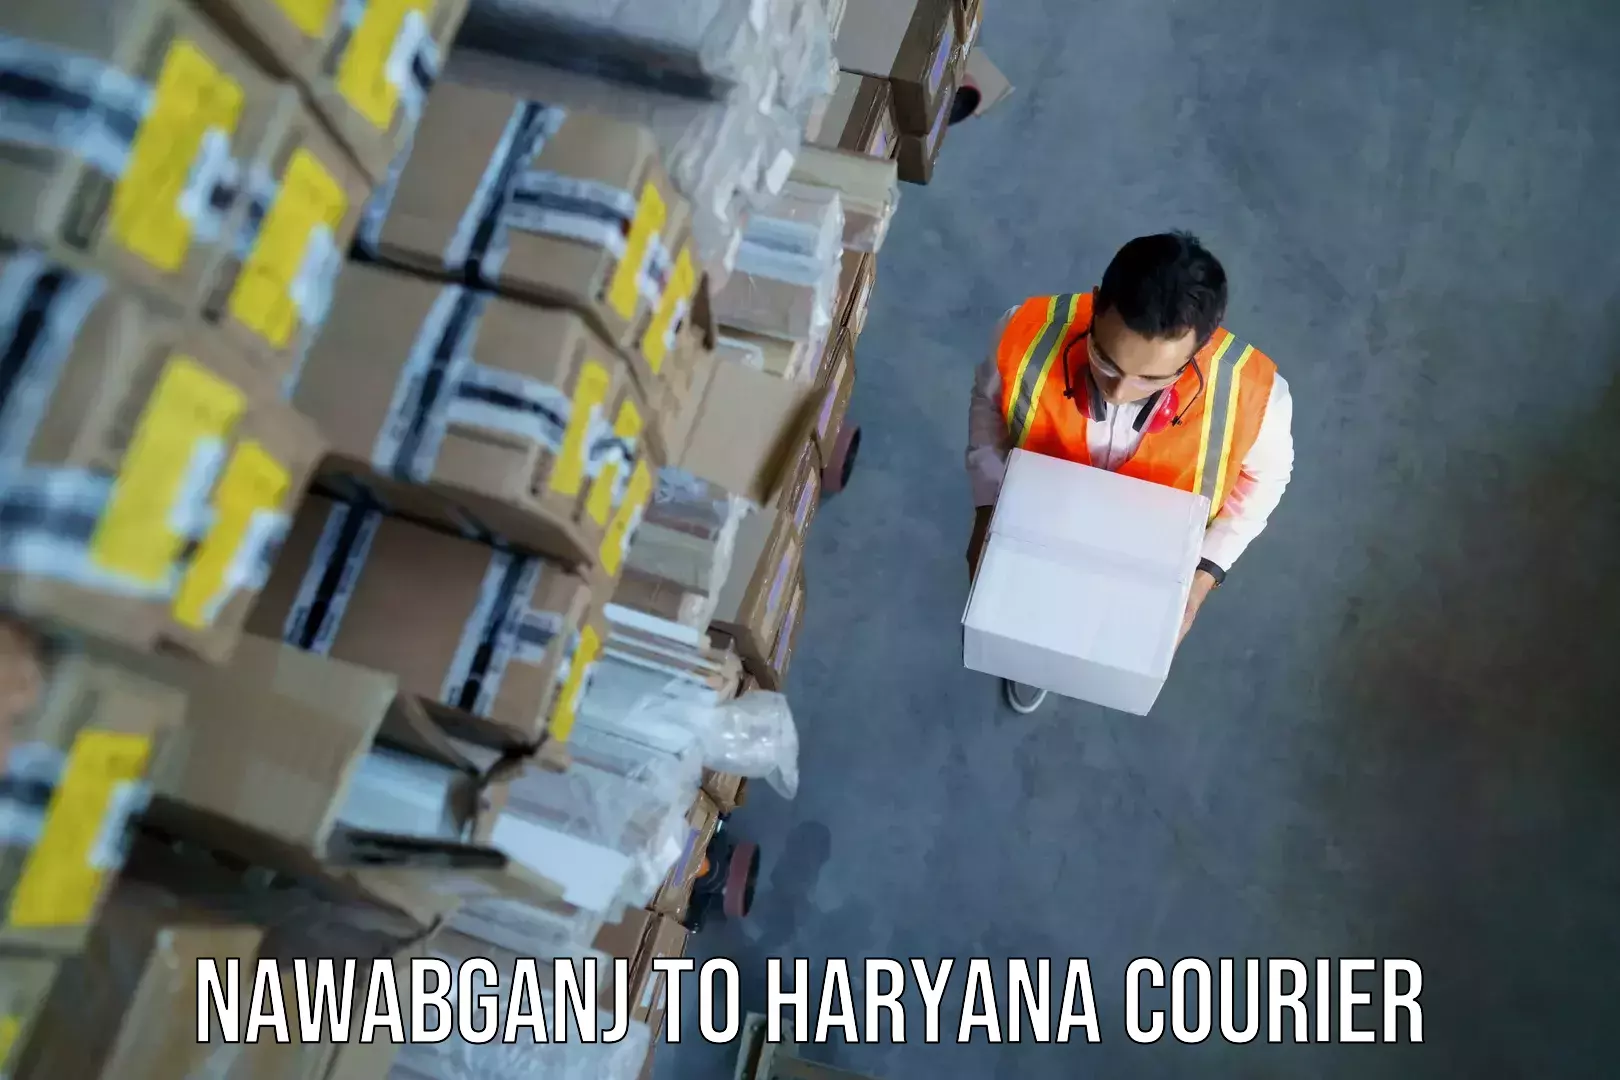 Baggage shipping quotes Nawabganj to Chaudhary Charan Singh Haryana Agricultural University Hisar